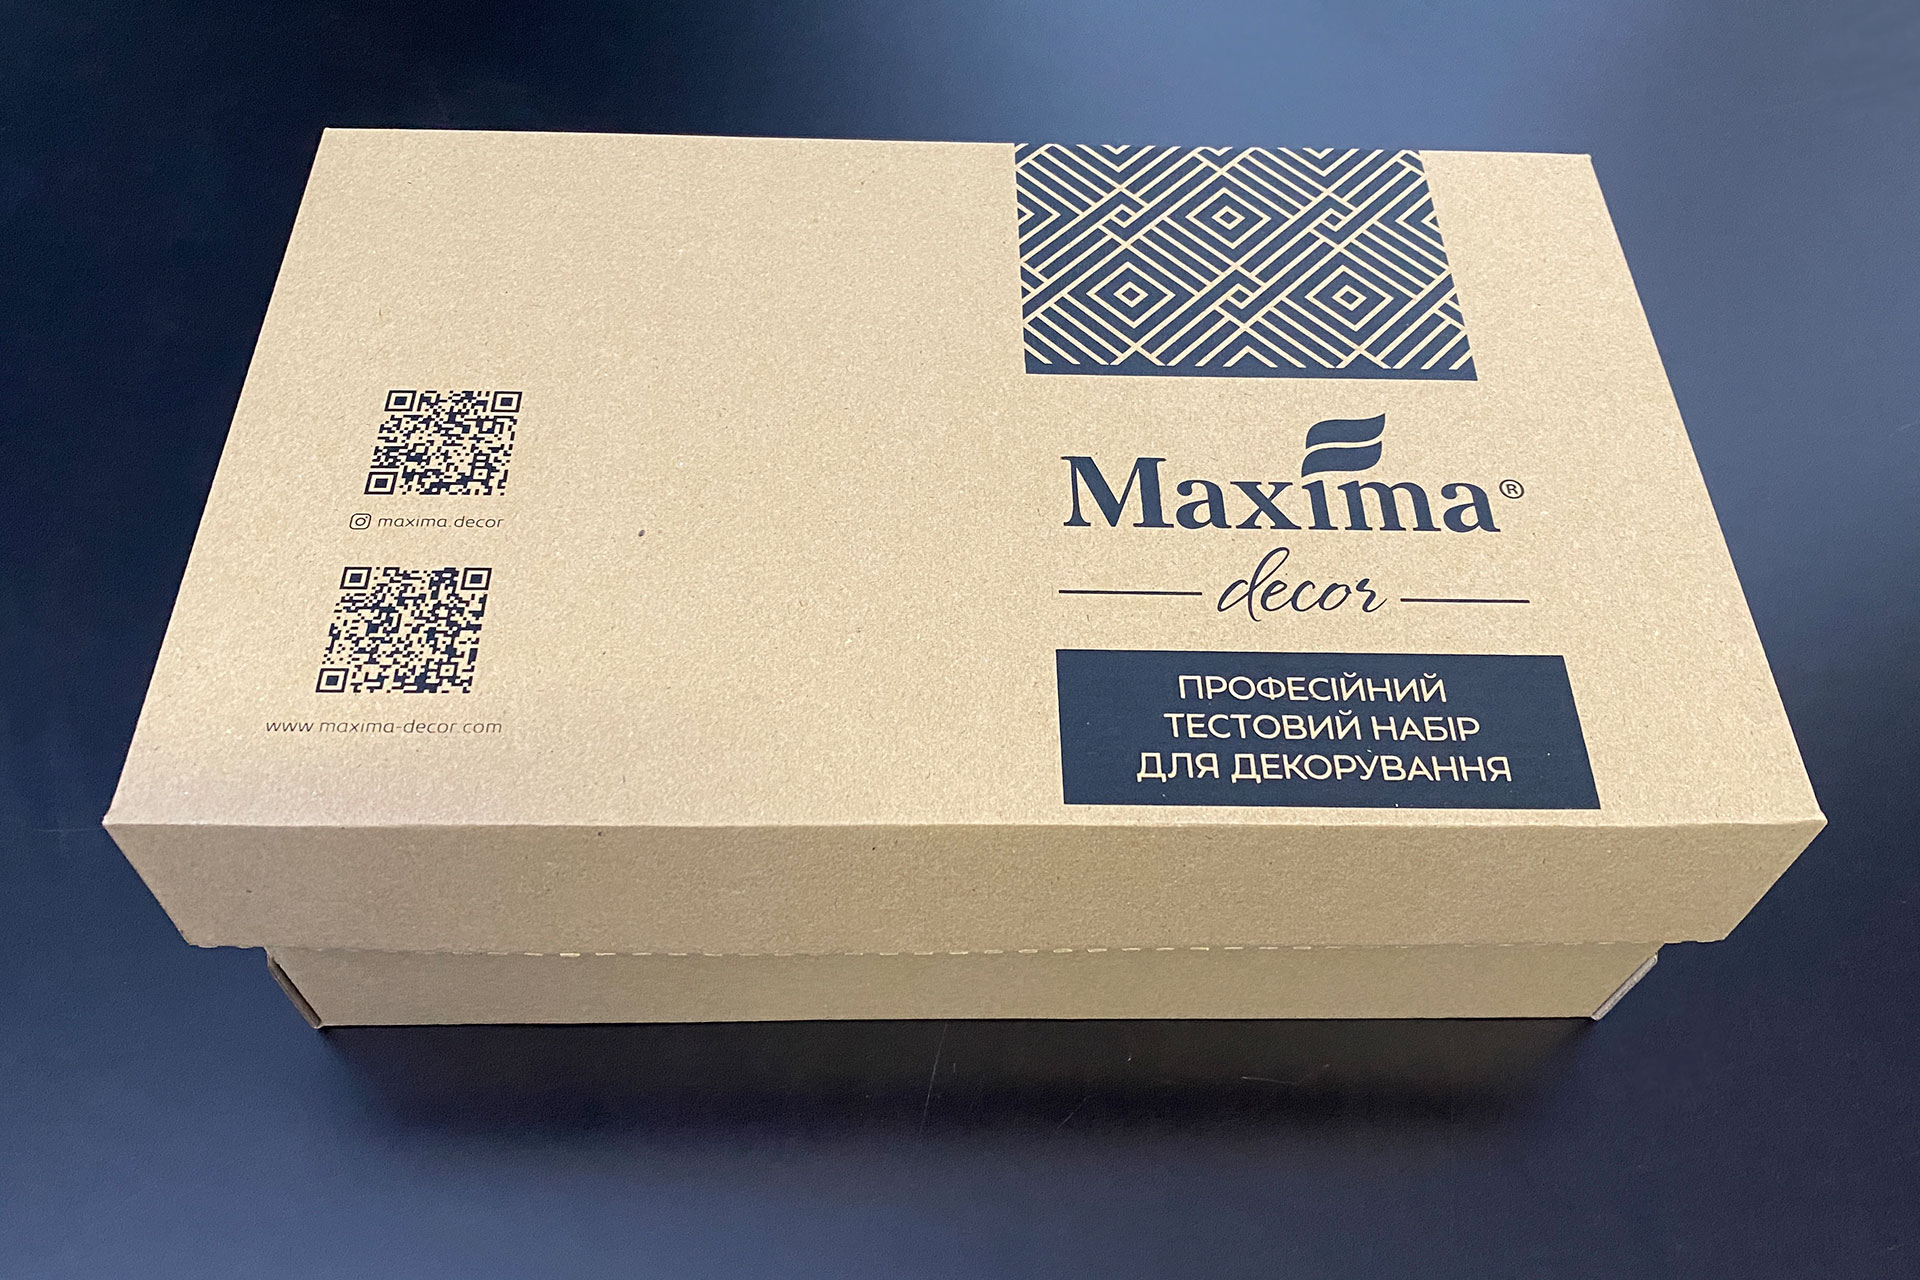 Maxima-decor promo-box